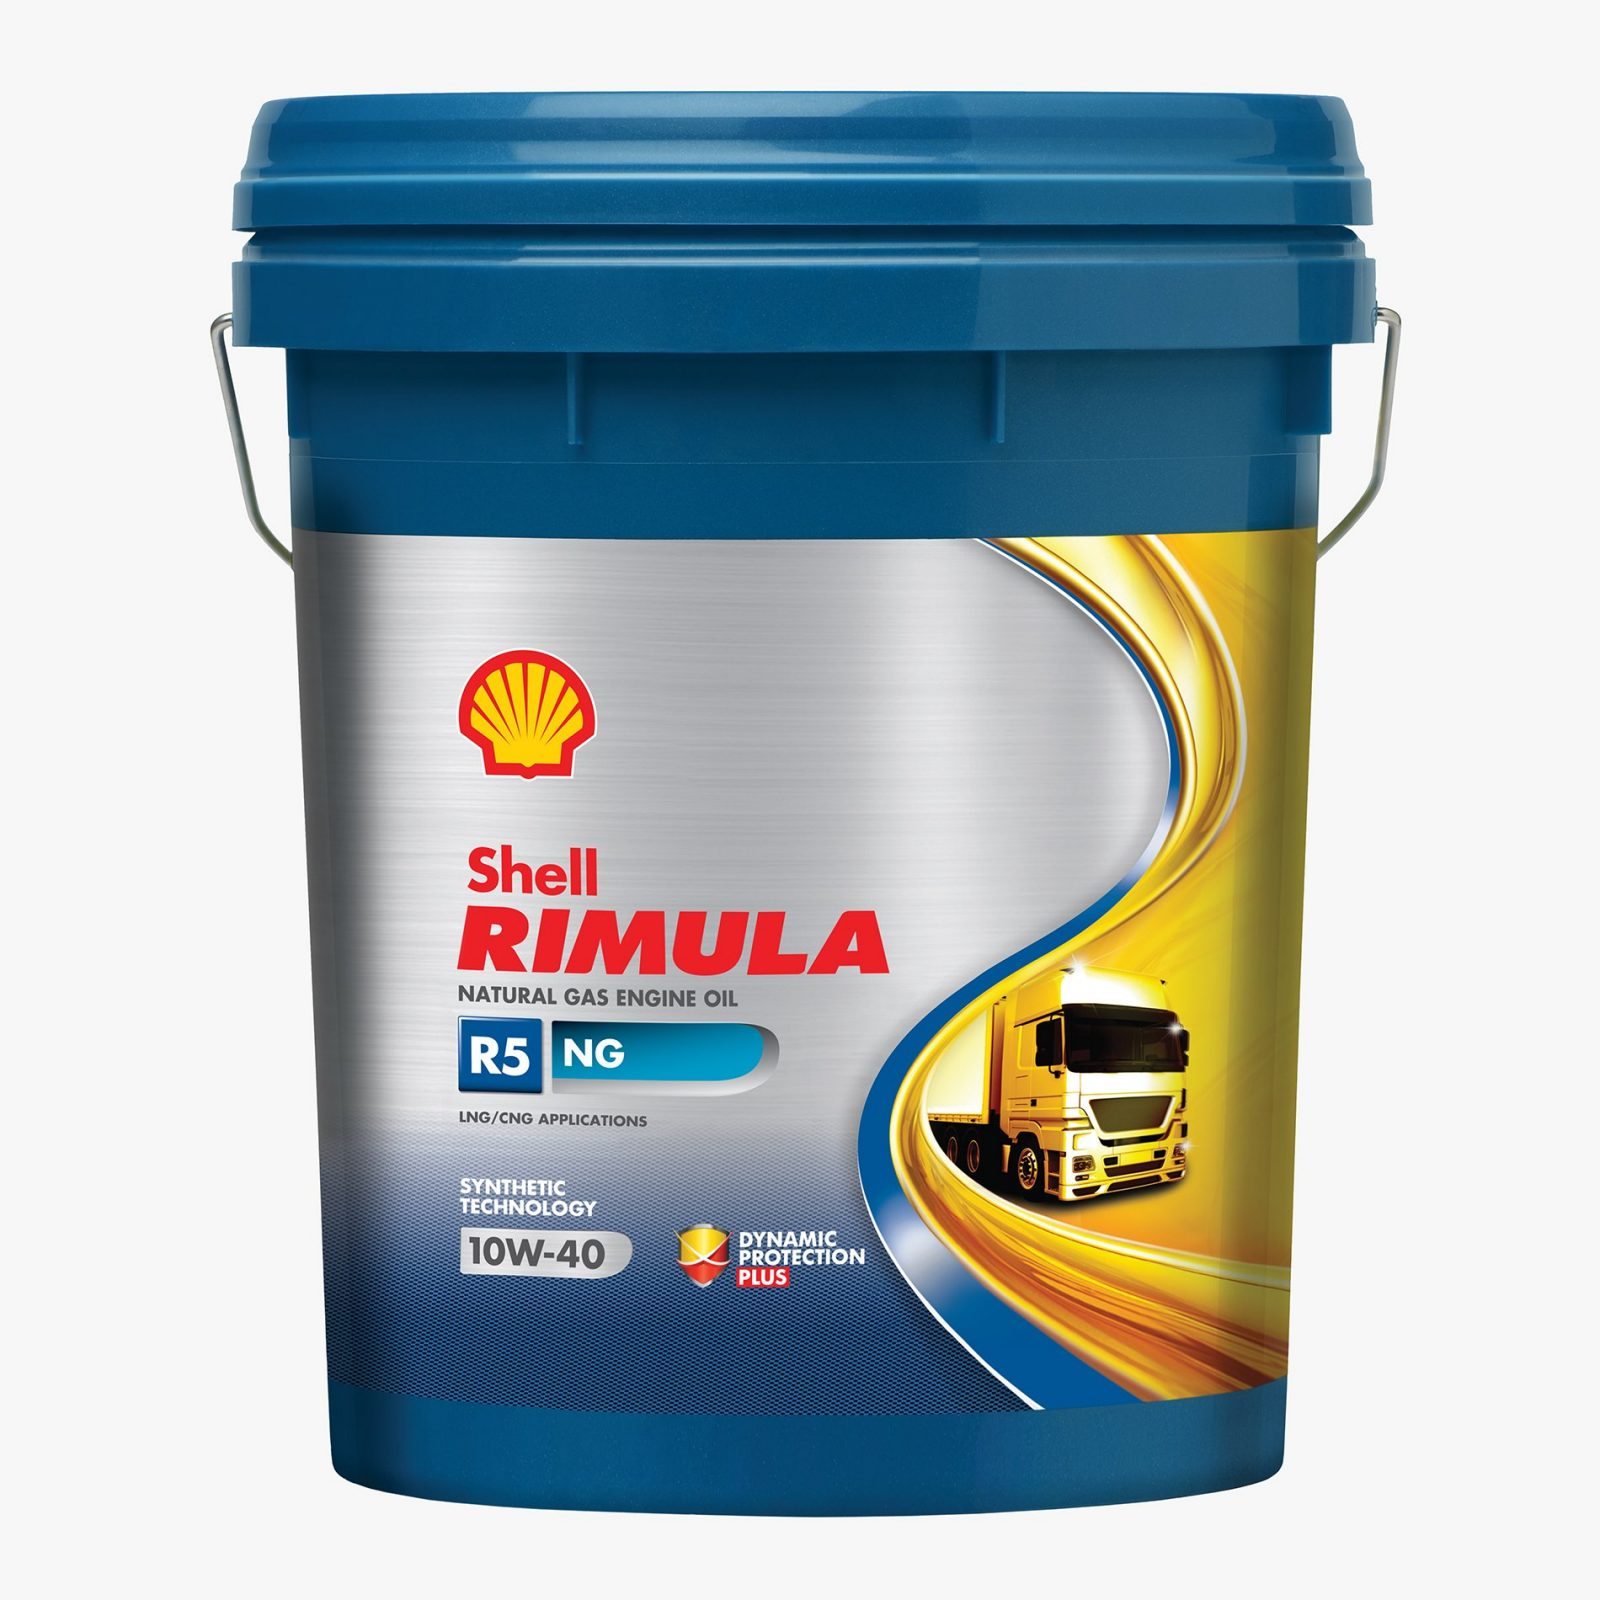 Shell Rimula R5 NG